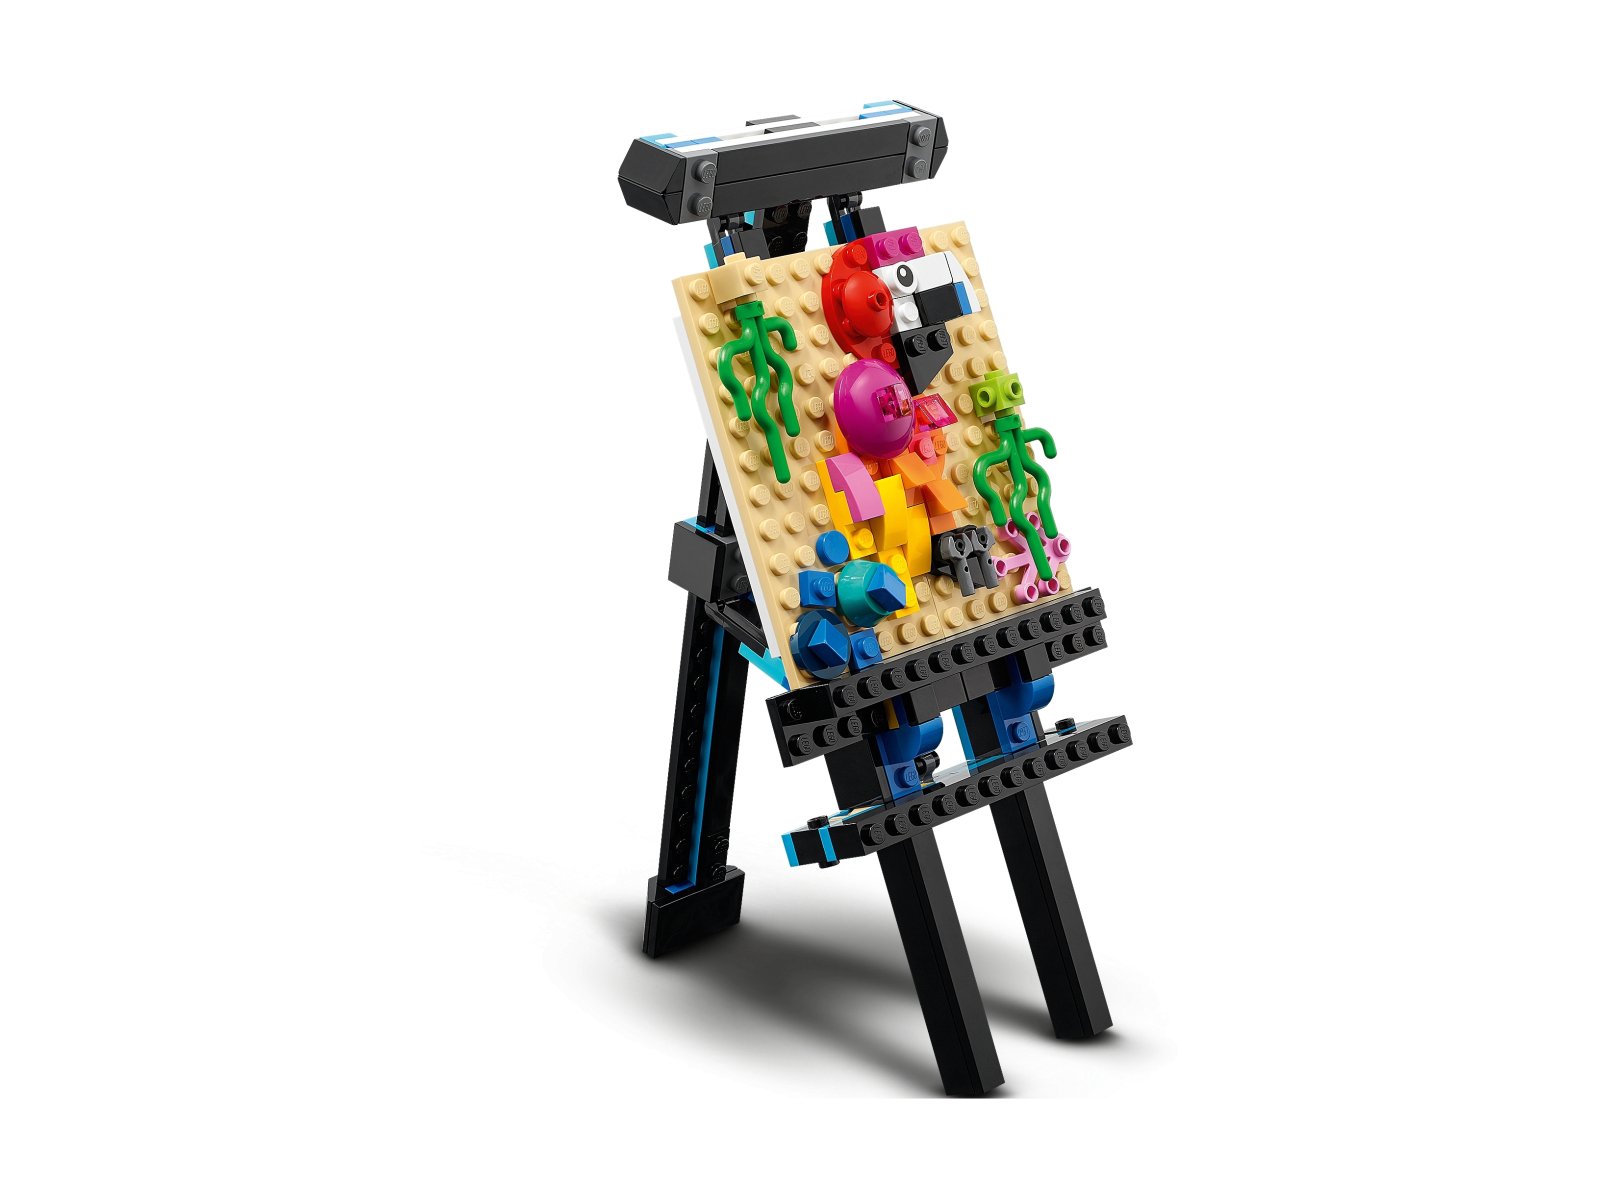 LEGO 31122 Creator 3 w 1 Akwarium